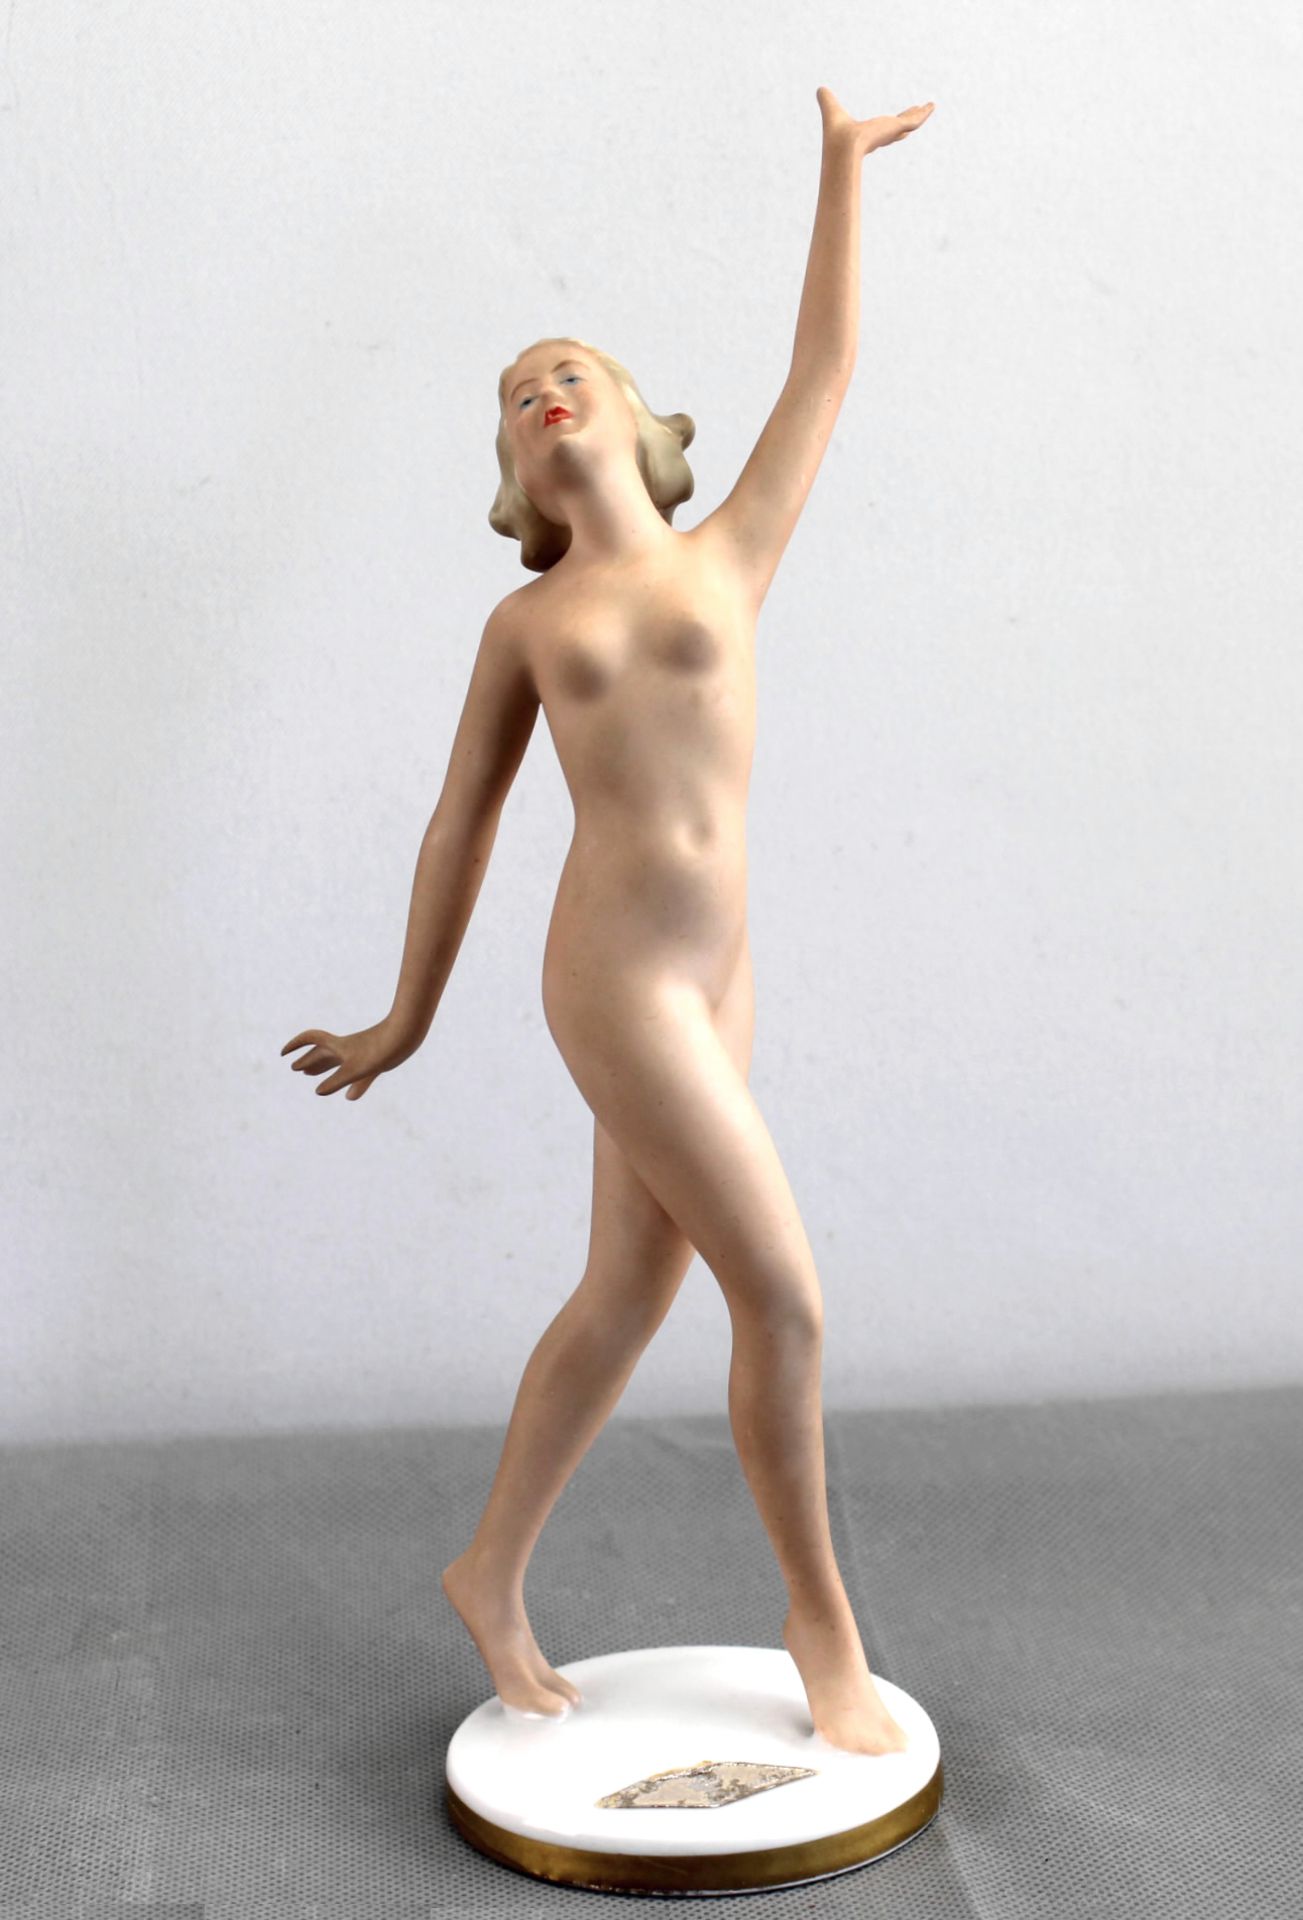 Porzellanfigur "Nackte Tänzerin" Gerold & Co.Tettau, Mod. 6340, nach 1949